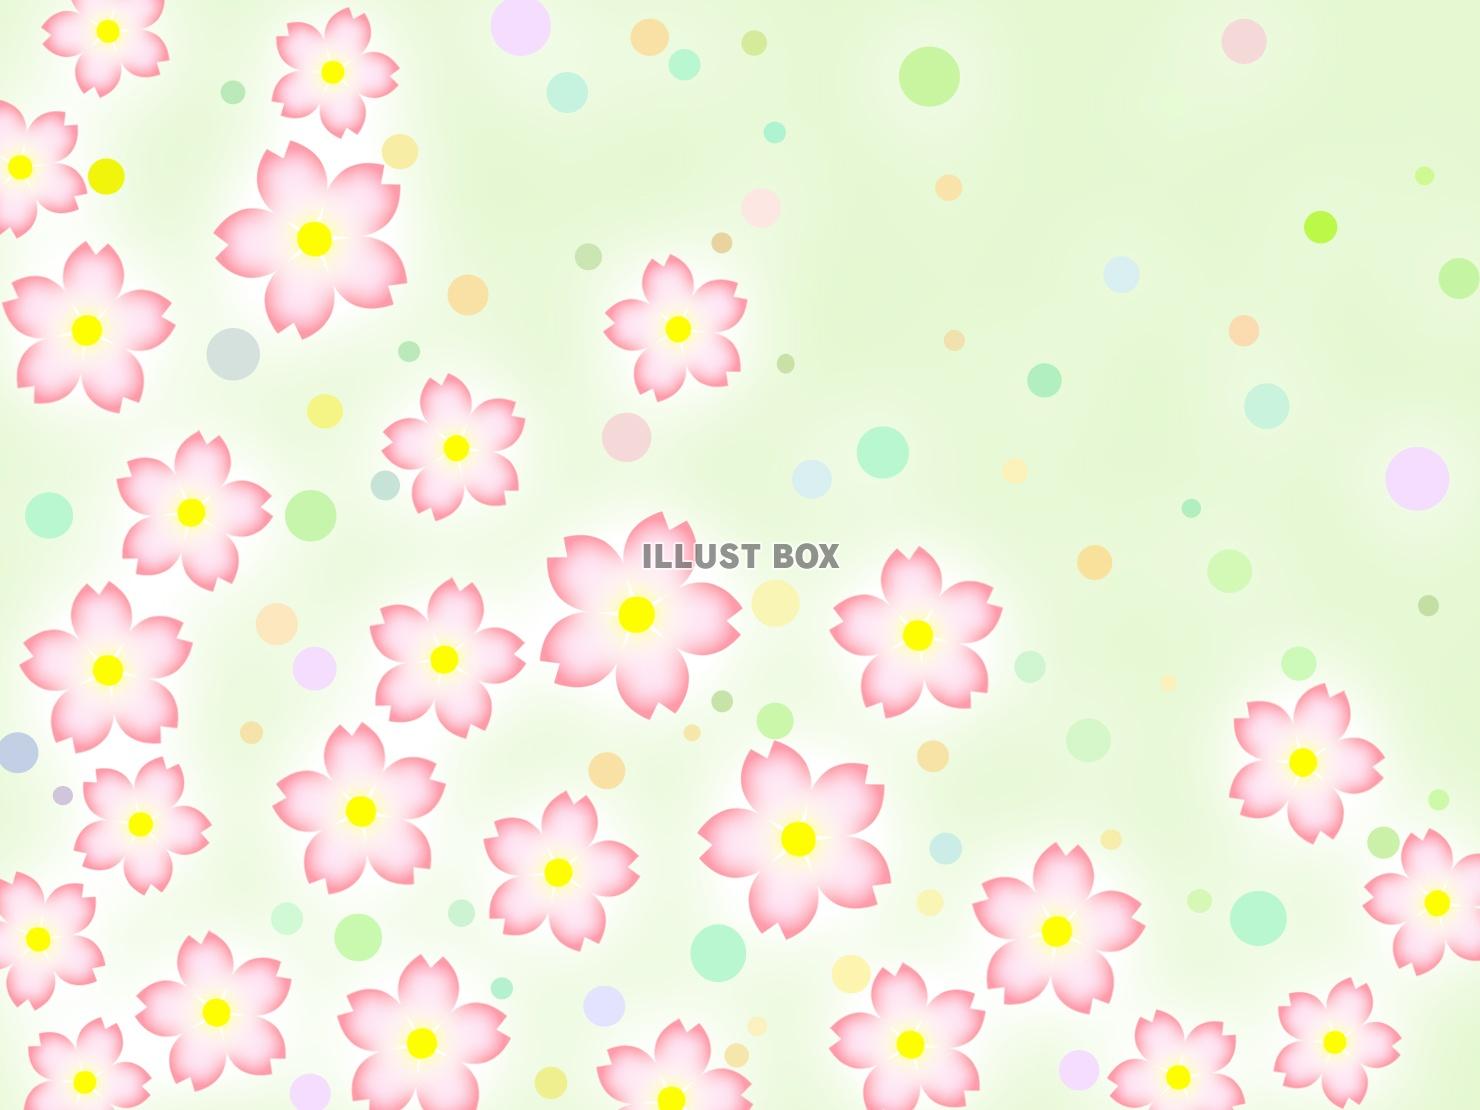 桜の花柄と水玉模様の壁紙背景素材イラスト